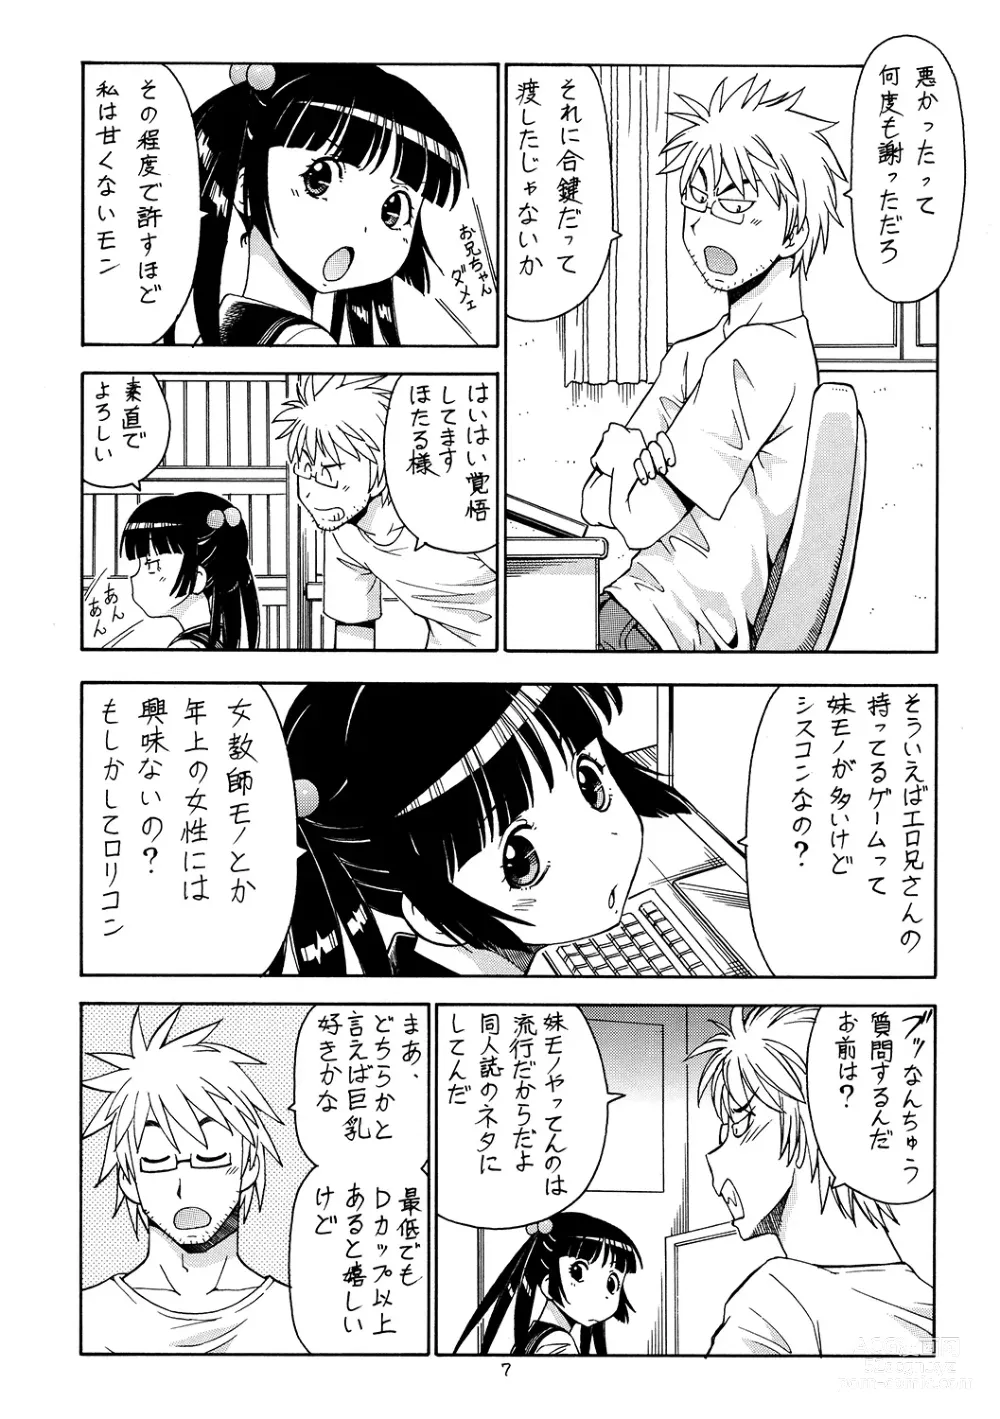 Page 8 of doujinshi Ita Yome Monogatari 2